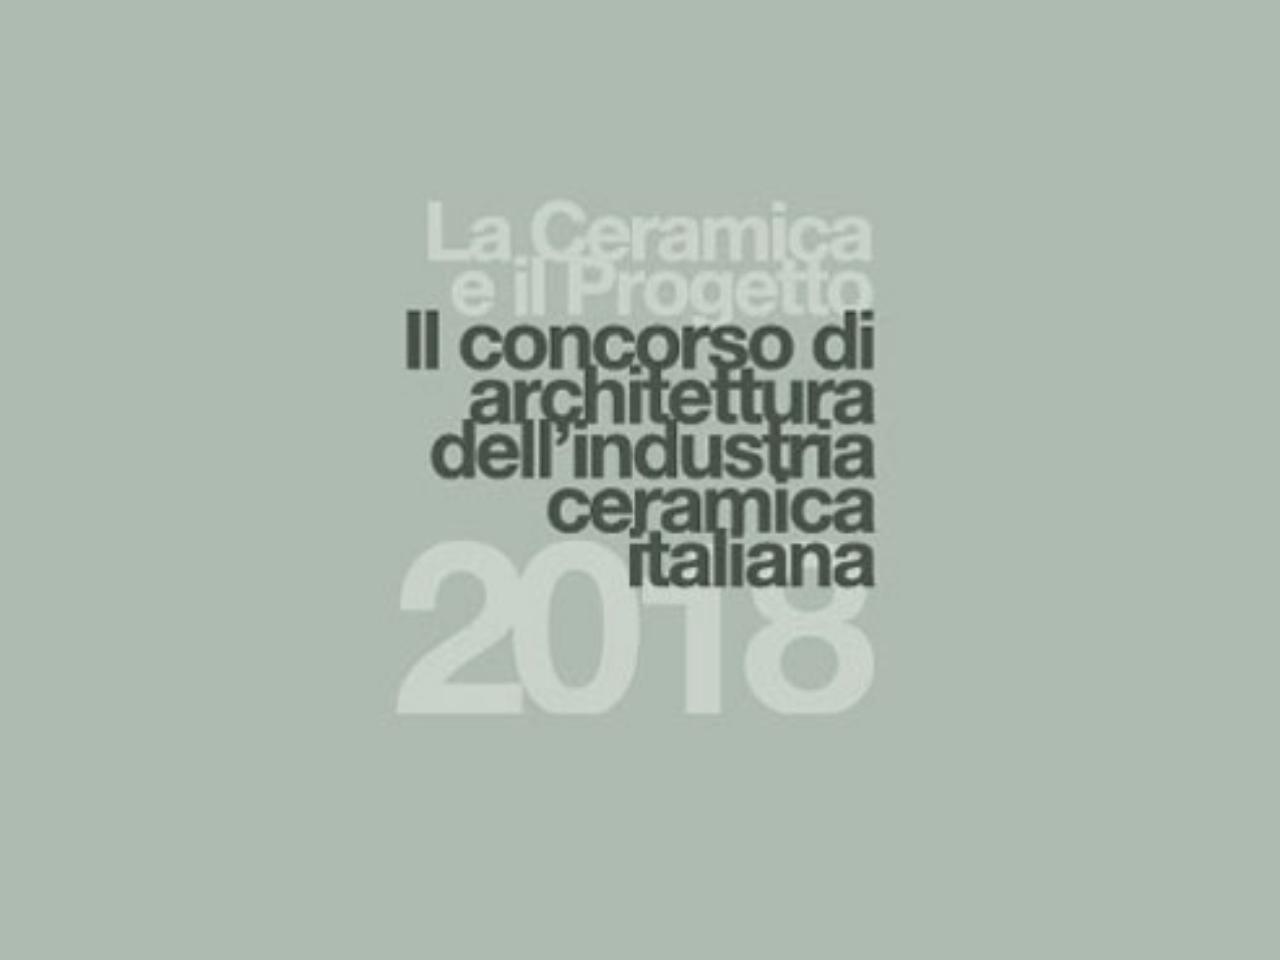 Settima edizione del concorso di architettura La Ceramica e il Progetto